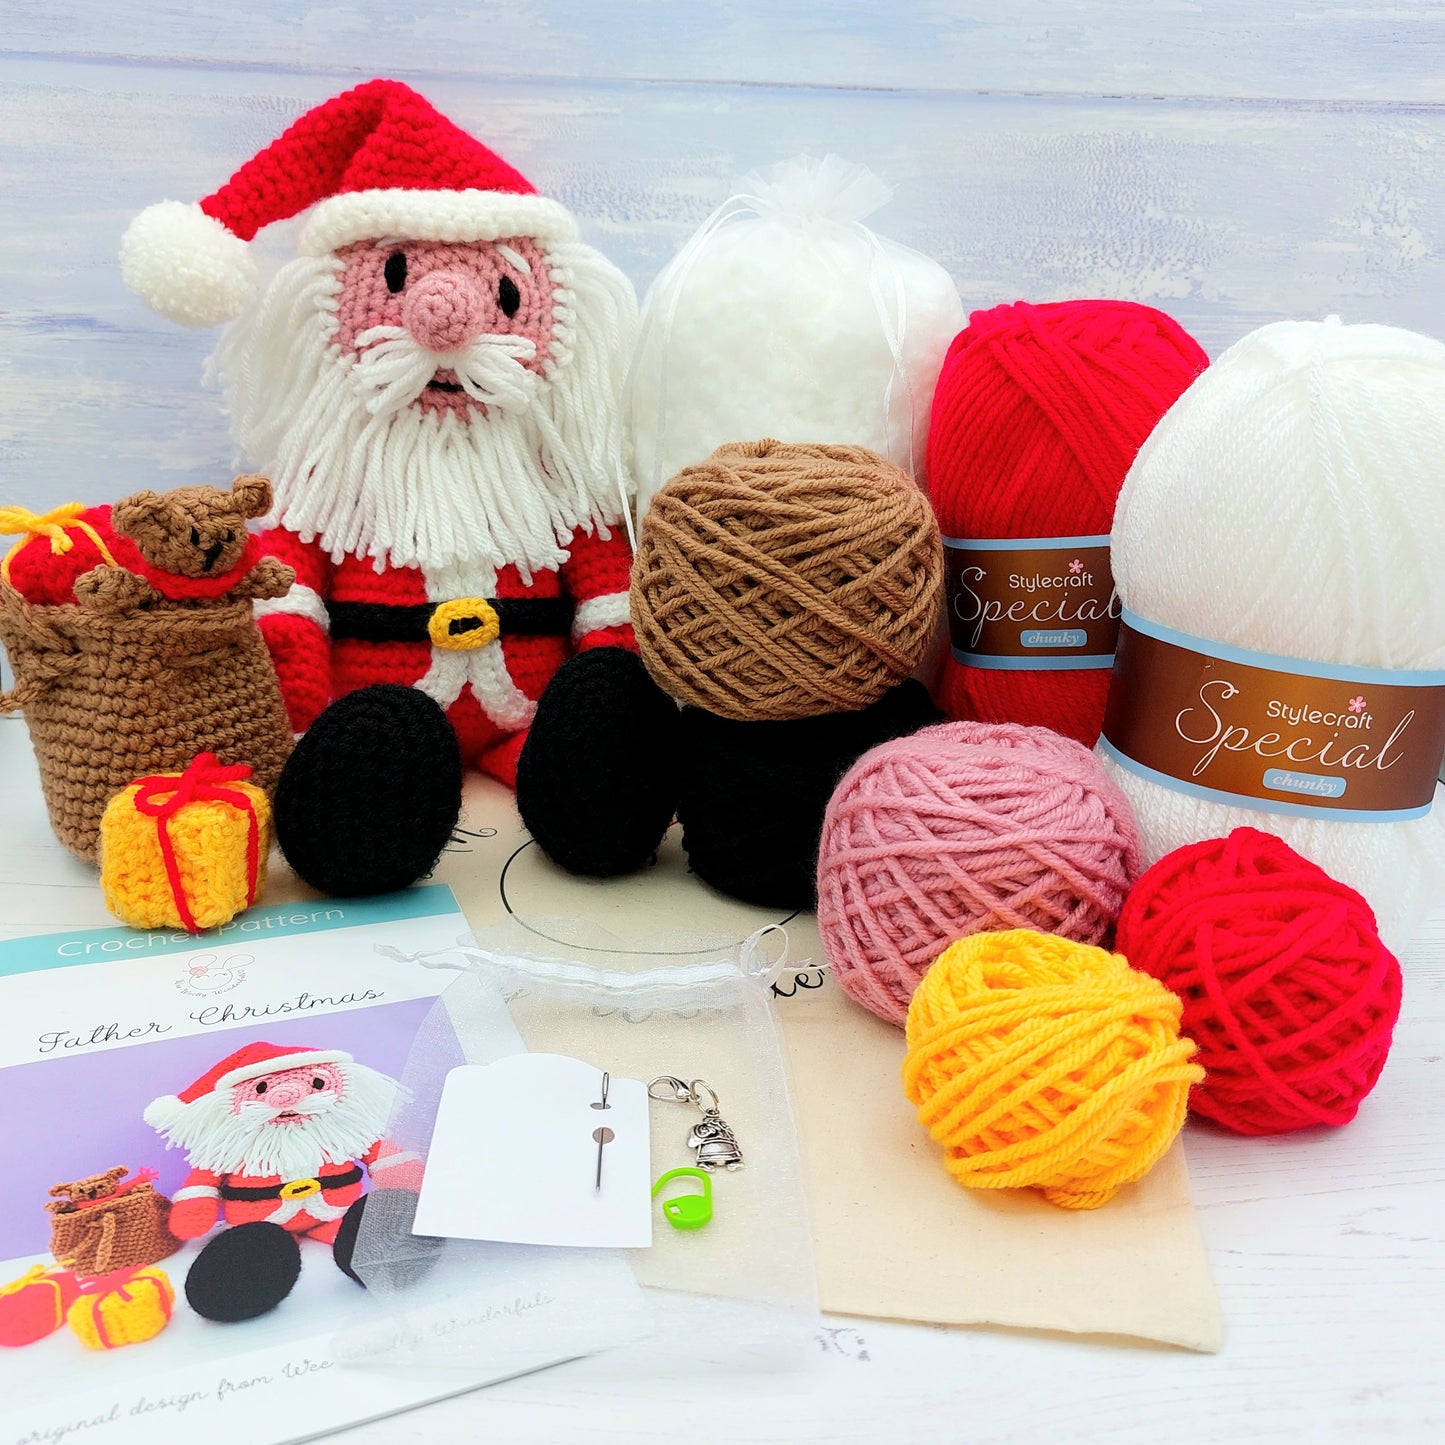 Full contents of Christmas crochet kit